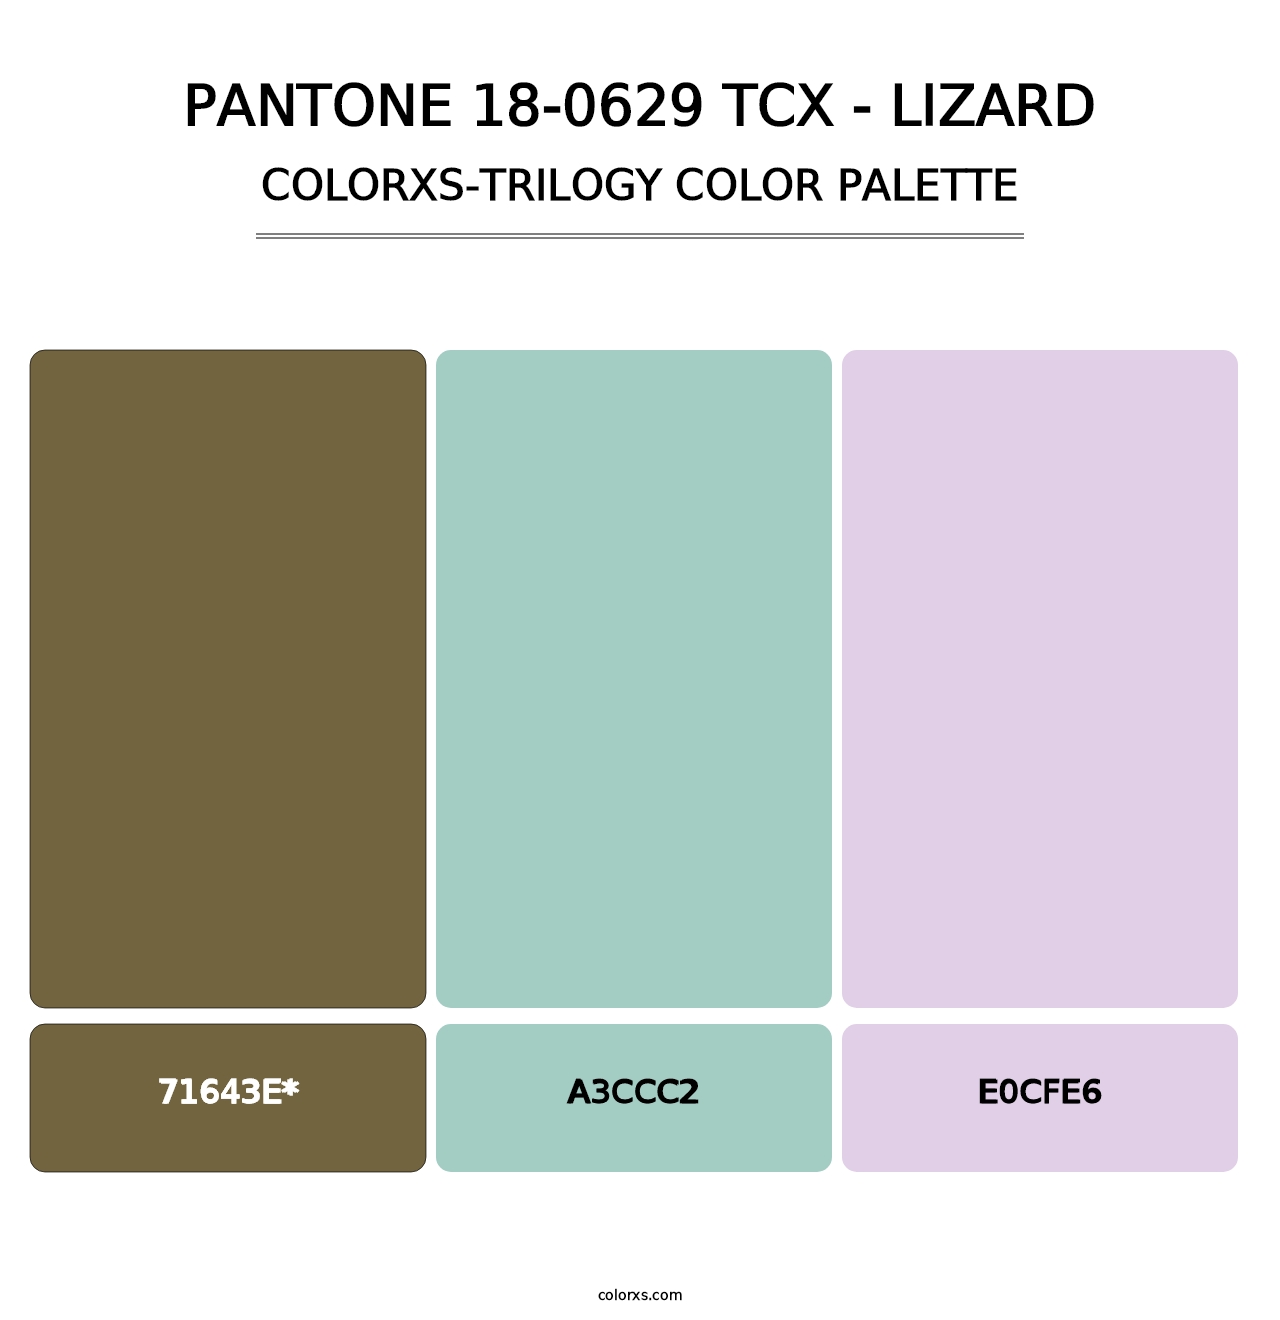 PANTONE 18-0629 TCX - Lizard - Colorxs Trilogy Palette